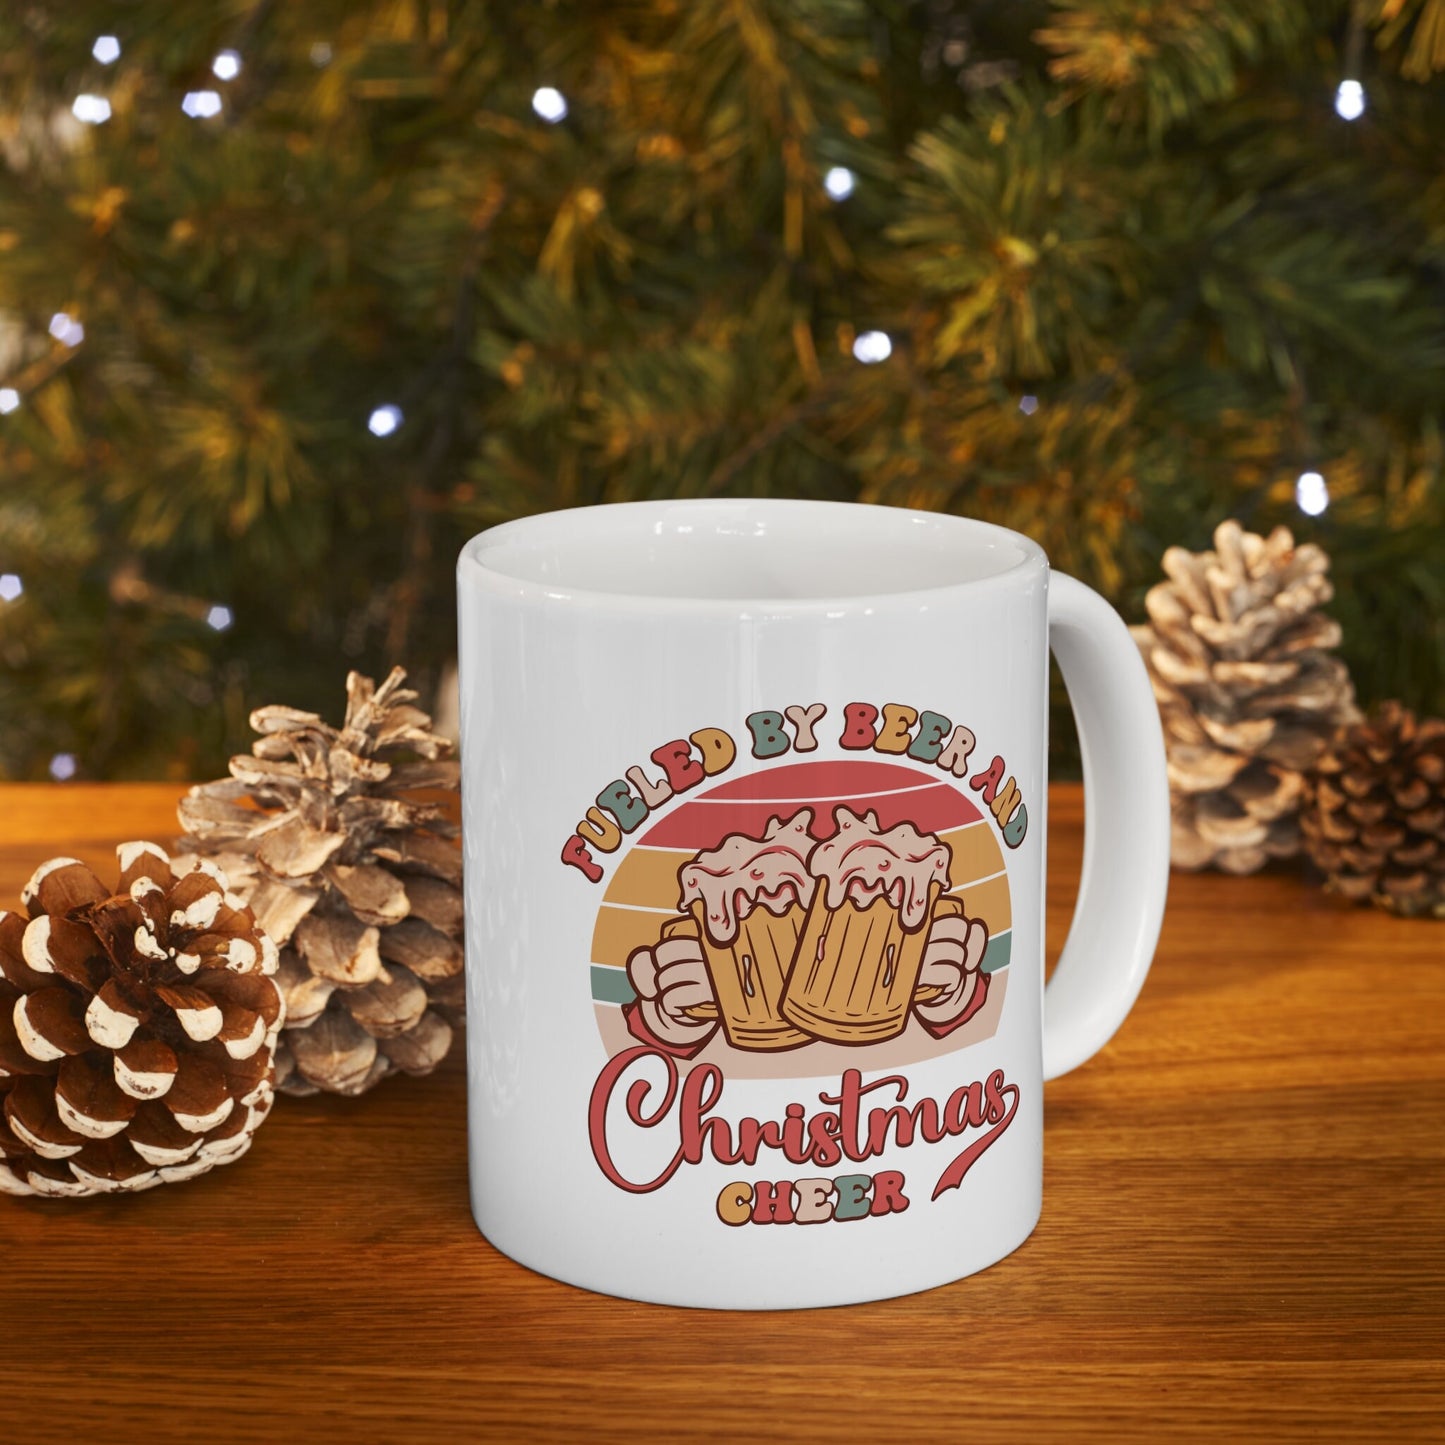 Fueled by Beer Christmas Mug, Perfect Holiday Cheer Coffee Mug, Gift Mug for Christmas Spirit, Cute X-Mas mug for Family and friends